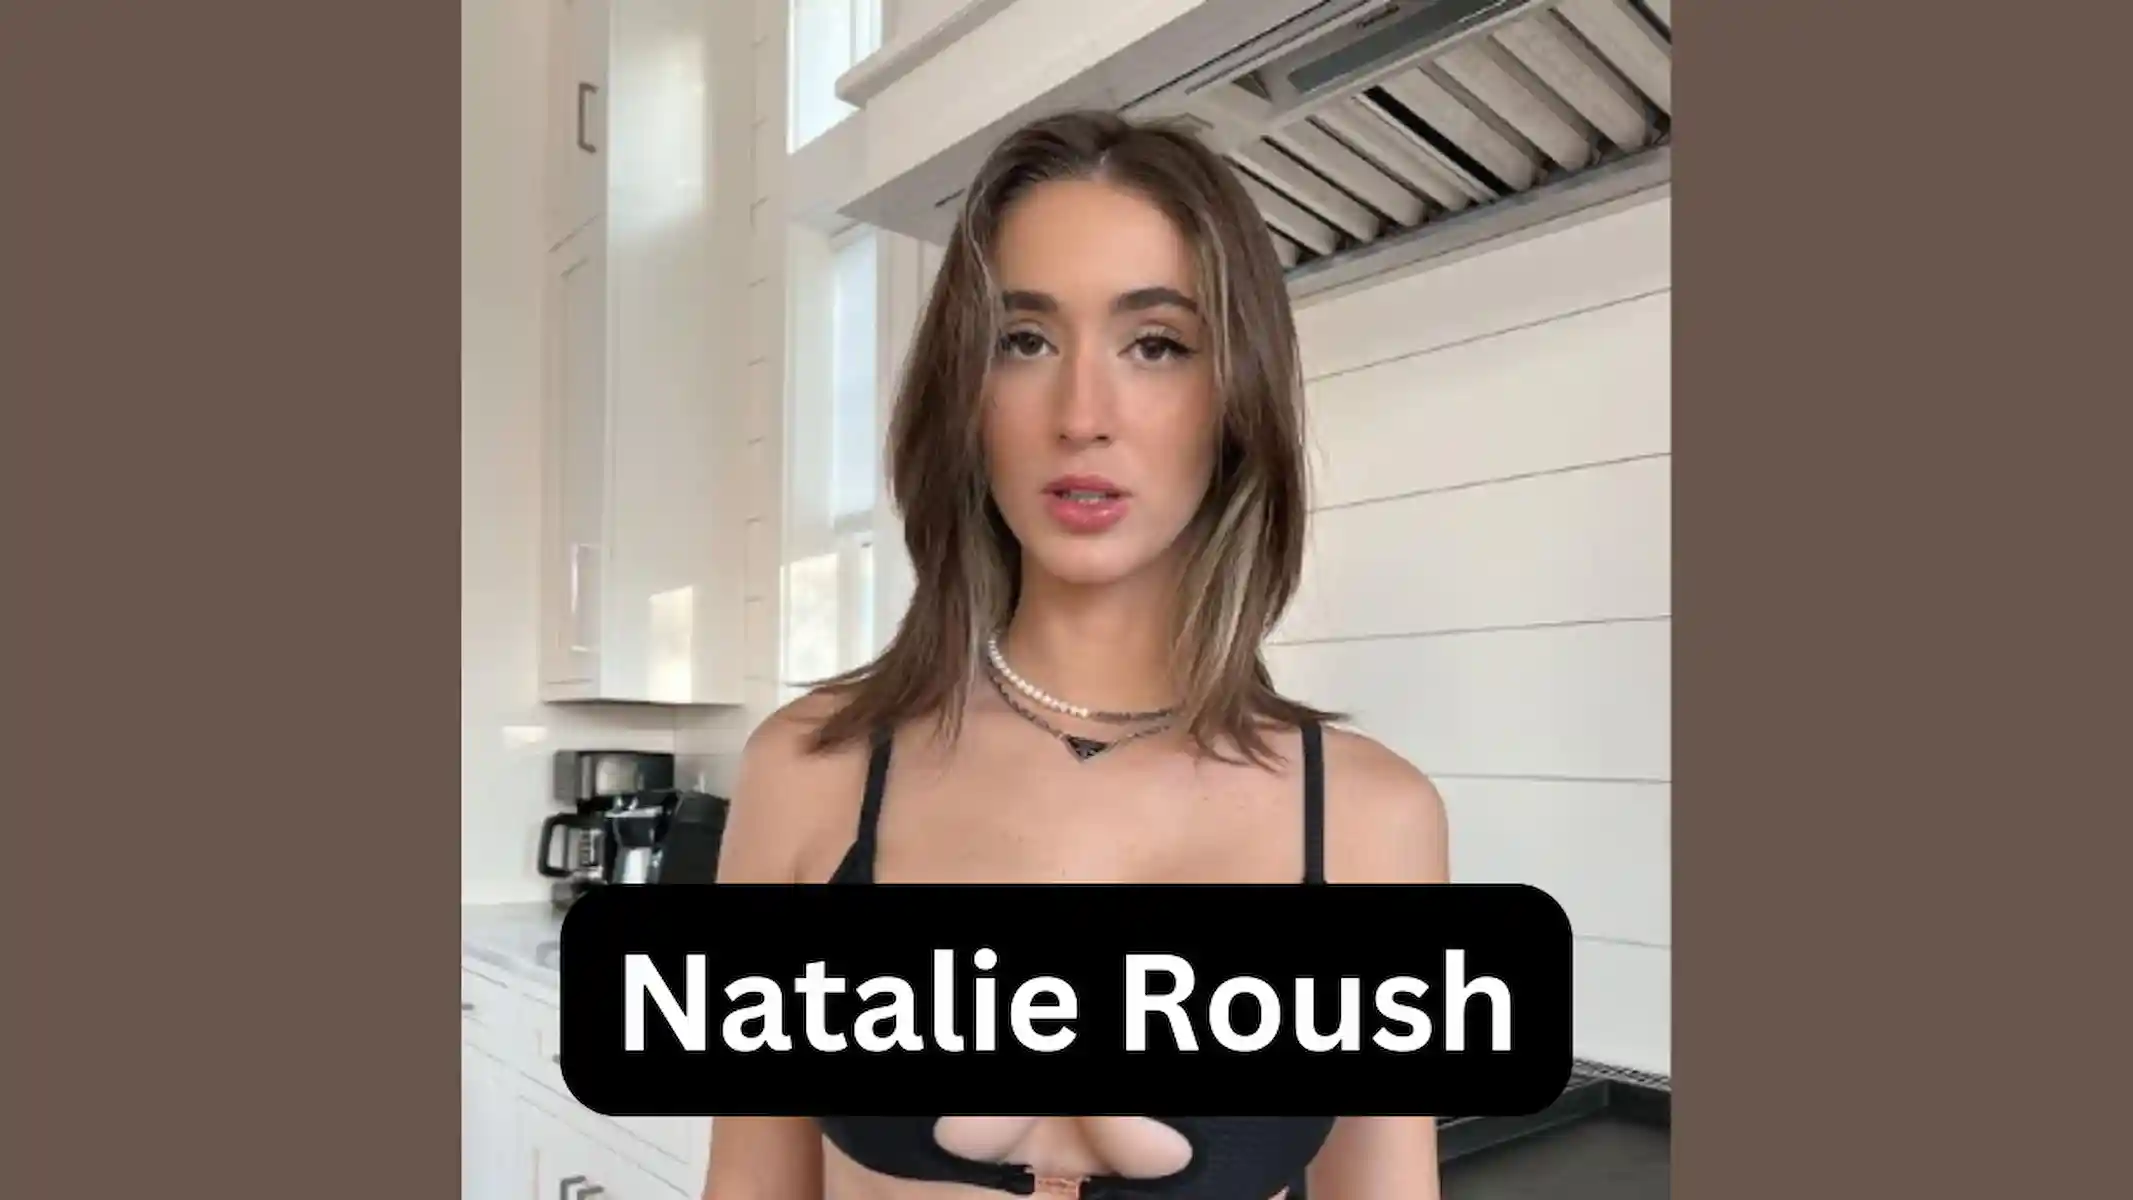 Natalie roush telegram